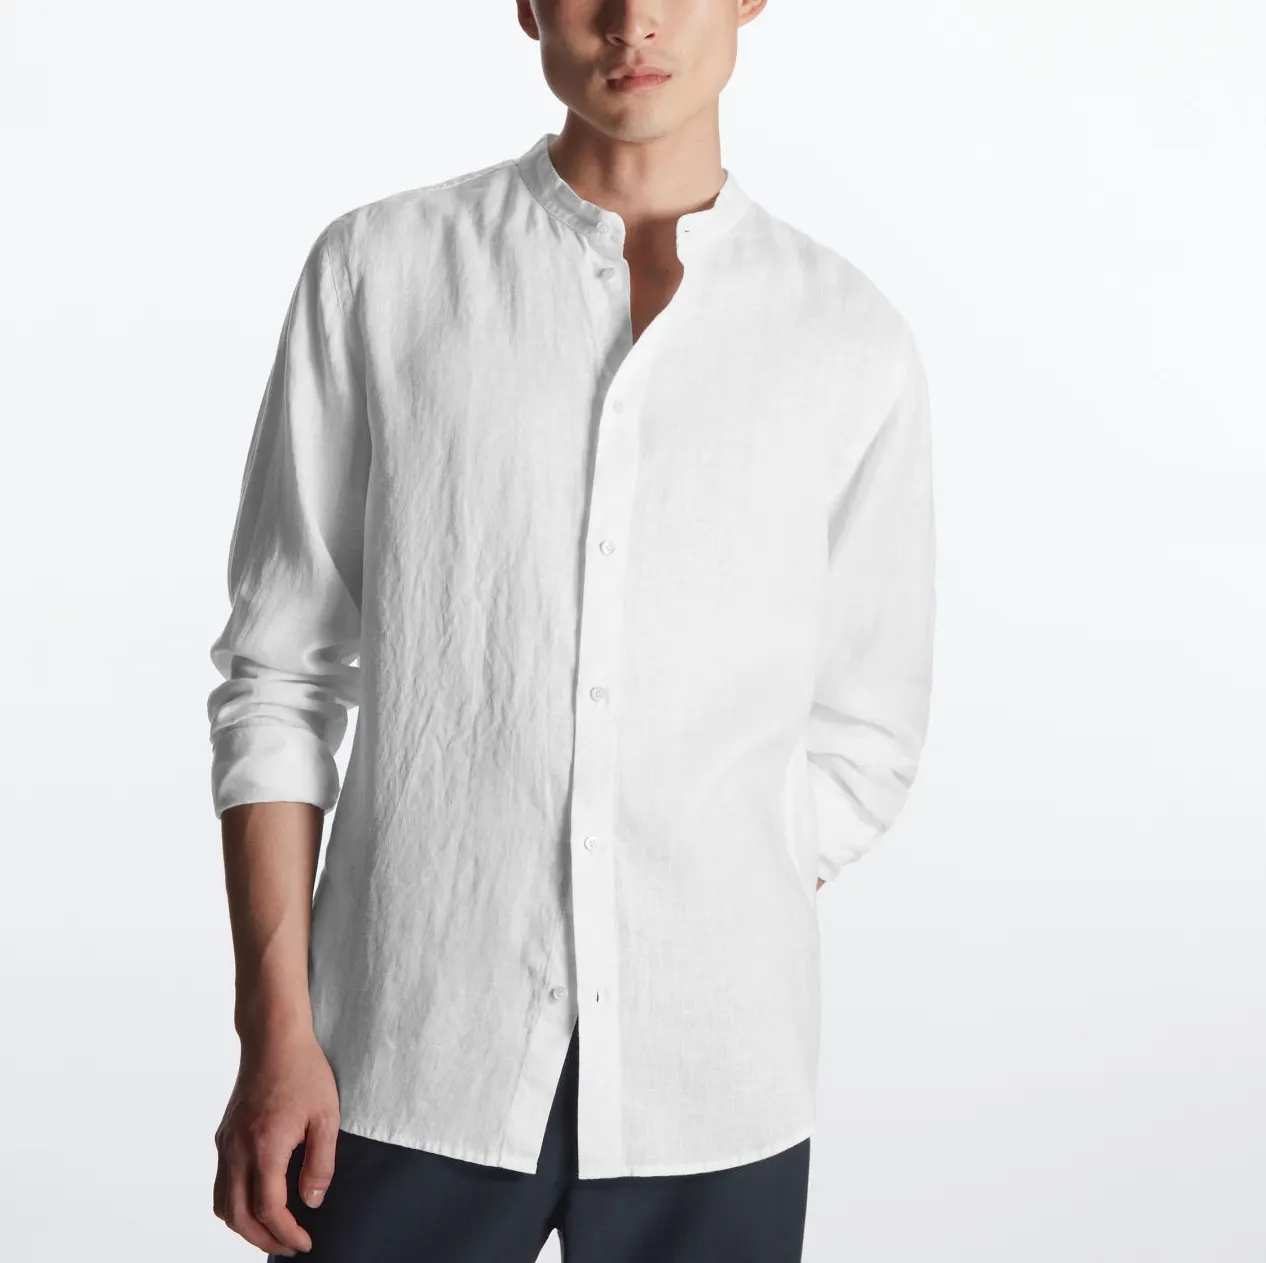 Оптовая продажа, итальянская льняная рубашка 100%, мужская рубашка, белая дышащая экологически чистая рубашка из хлопка и конопли для мужчин